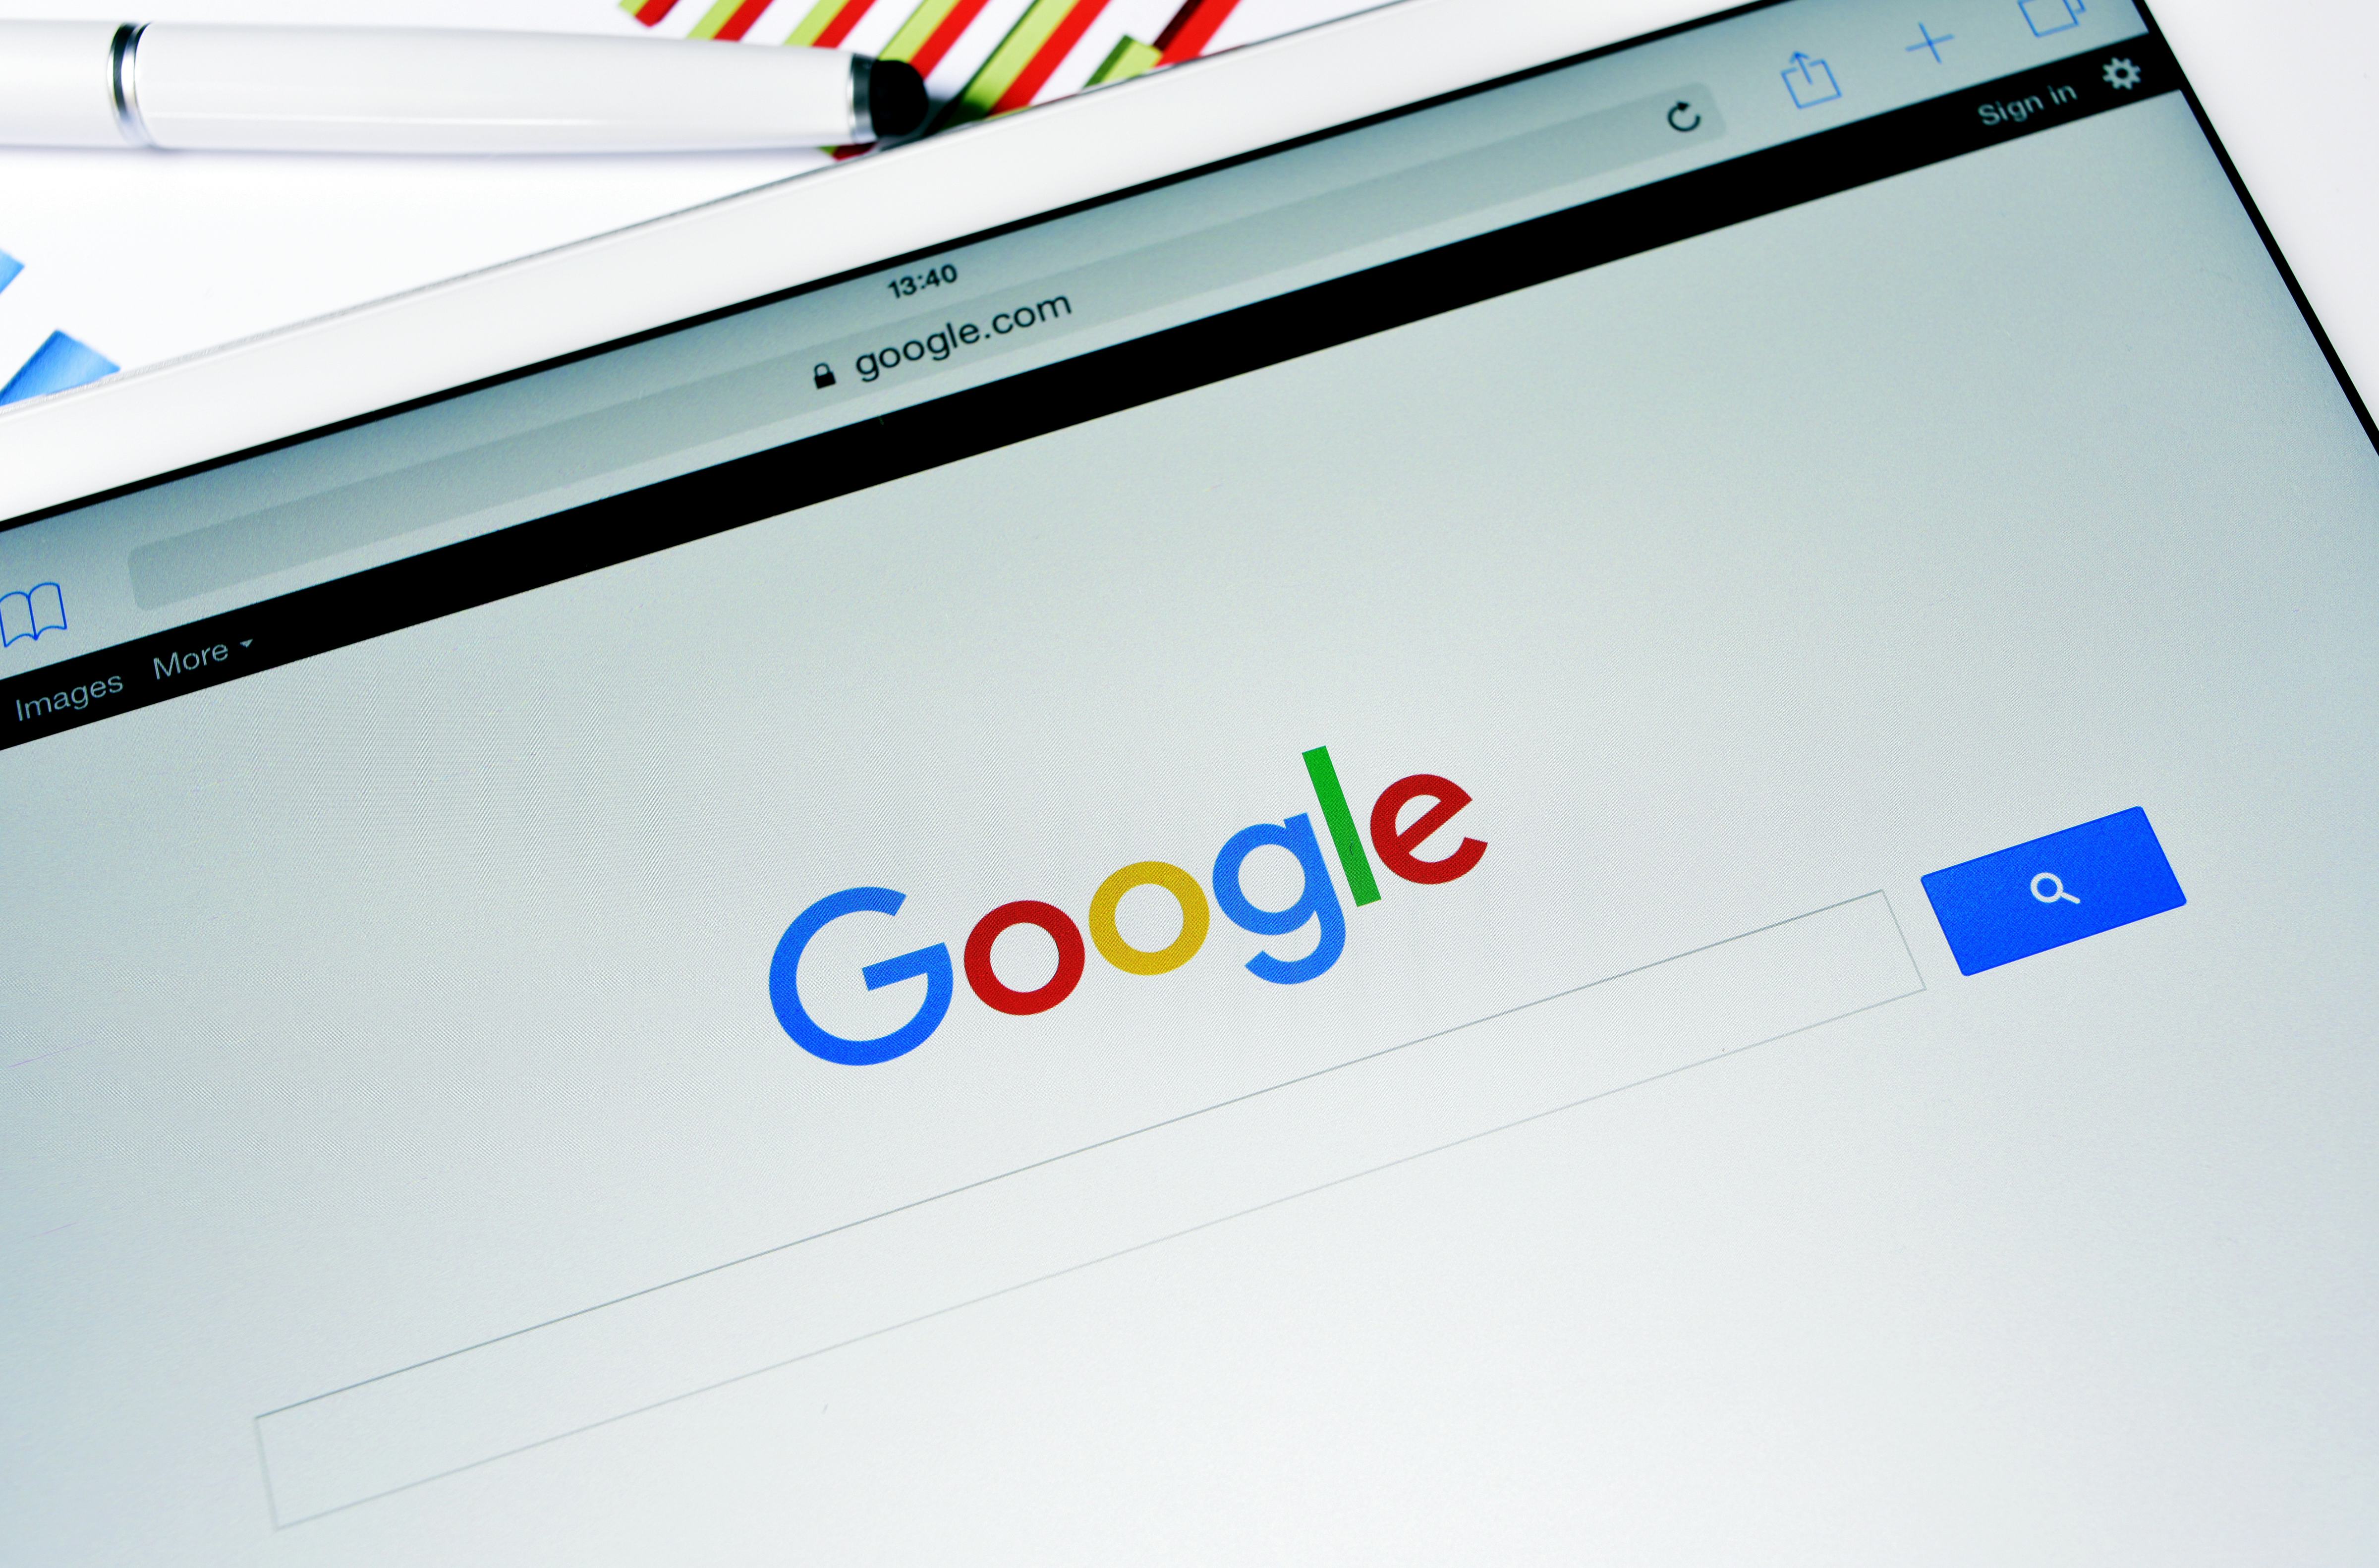 Google en privacy: zoeken op de naam van gasten. Mag dat?